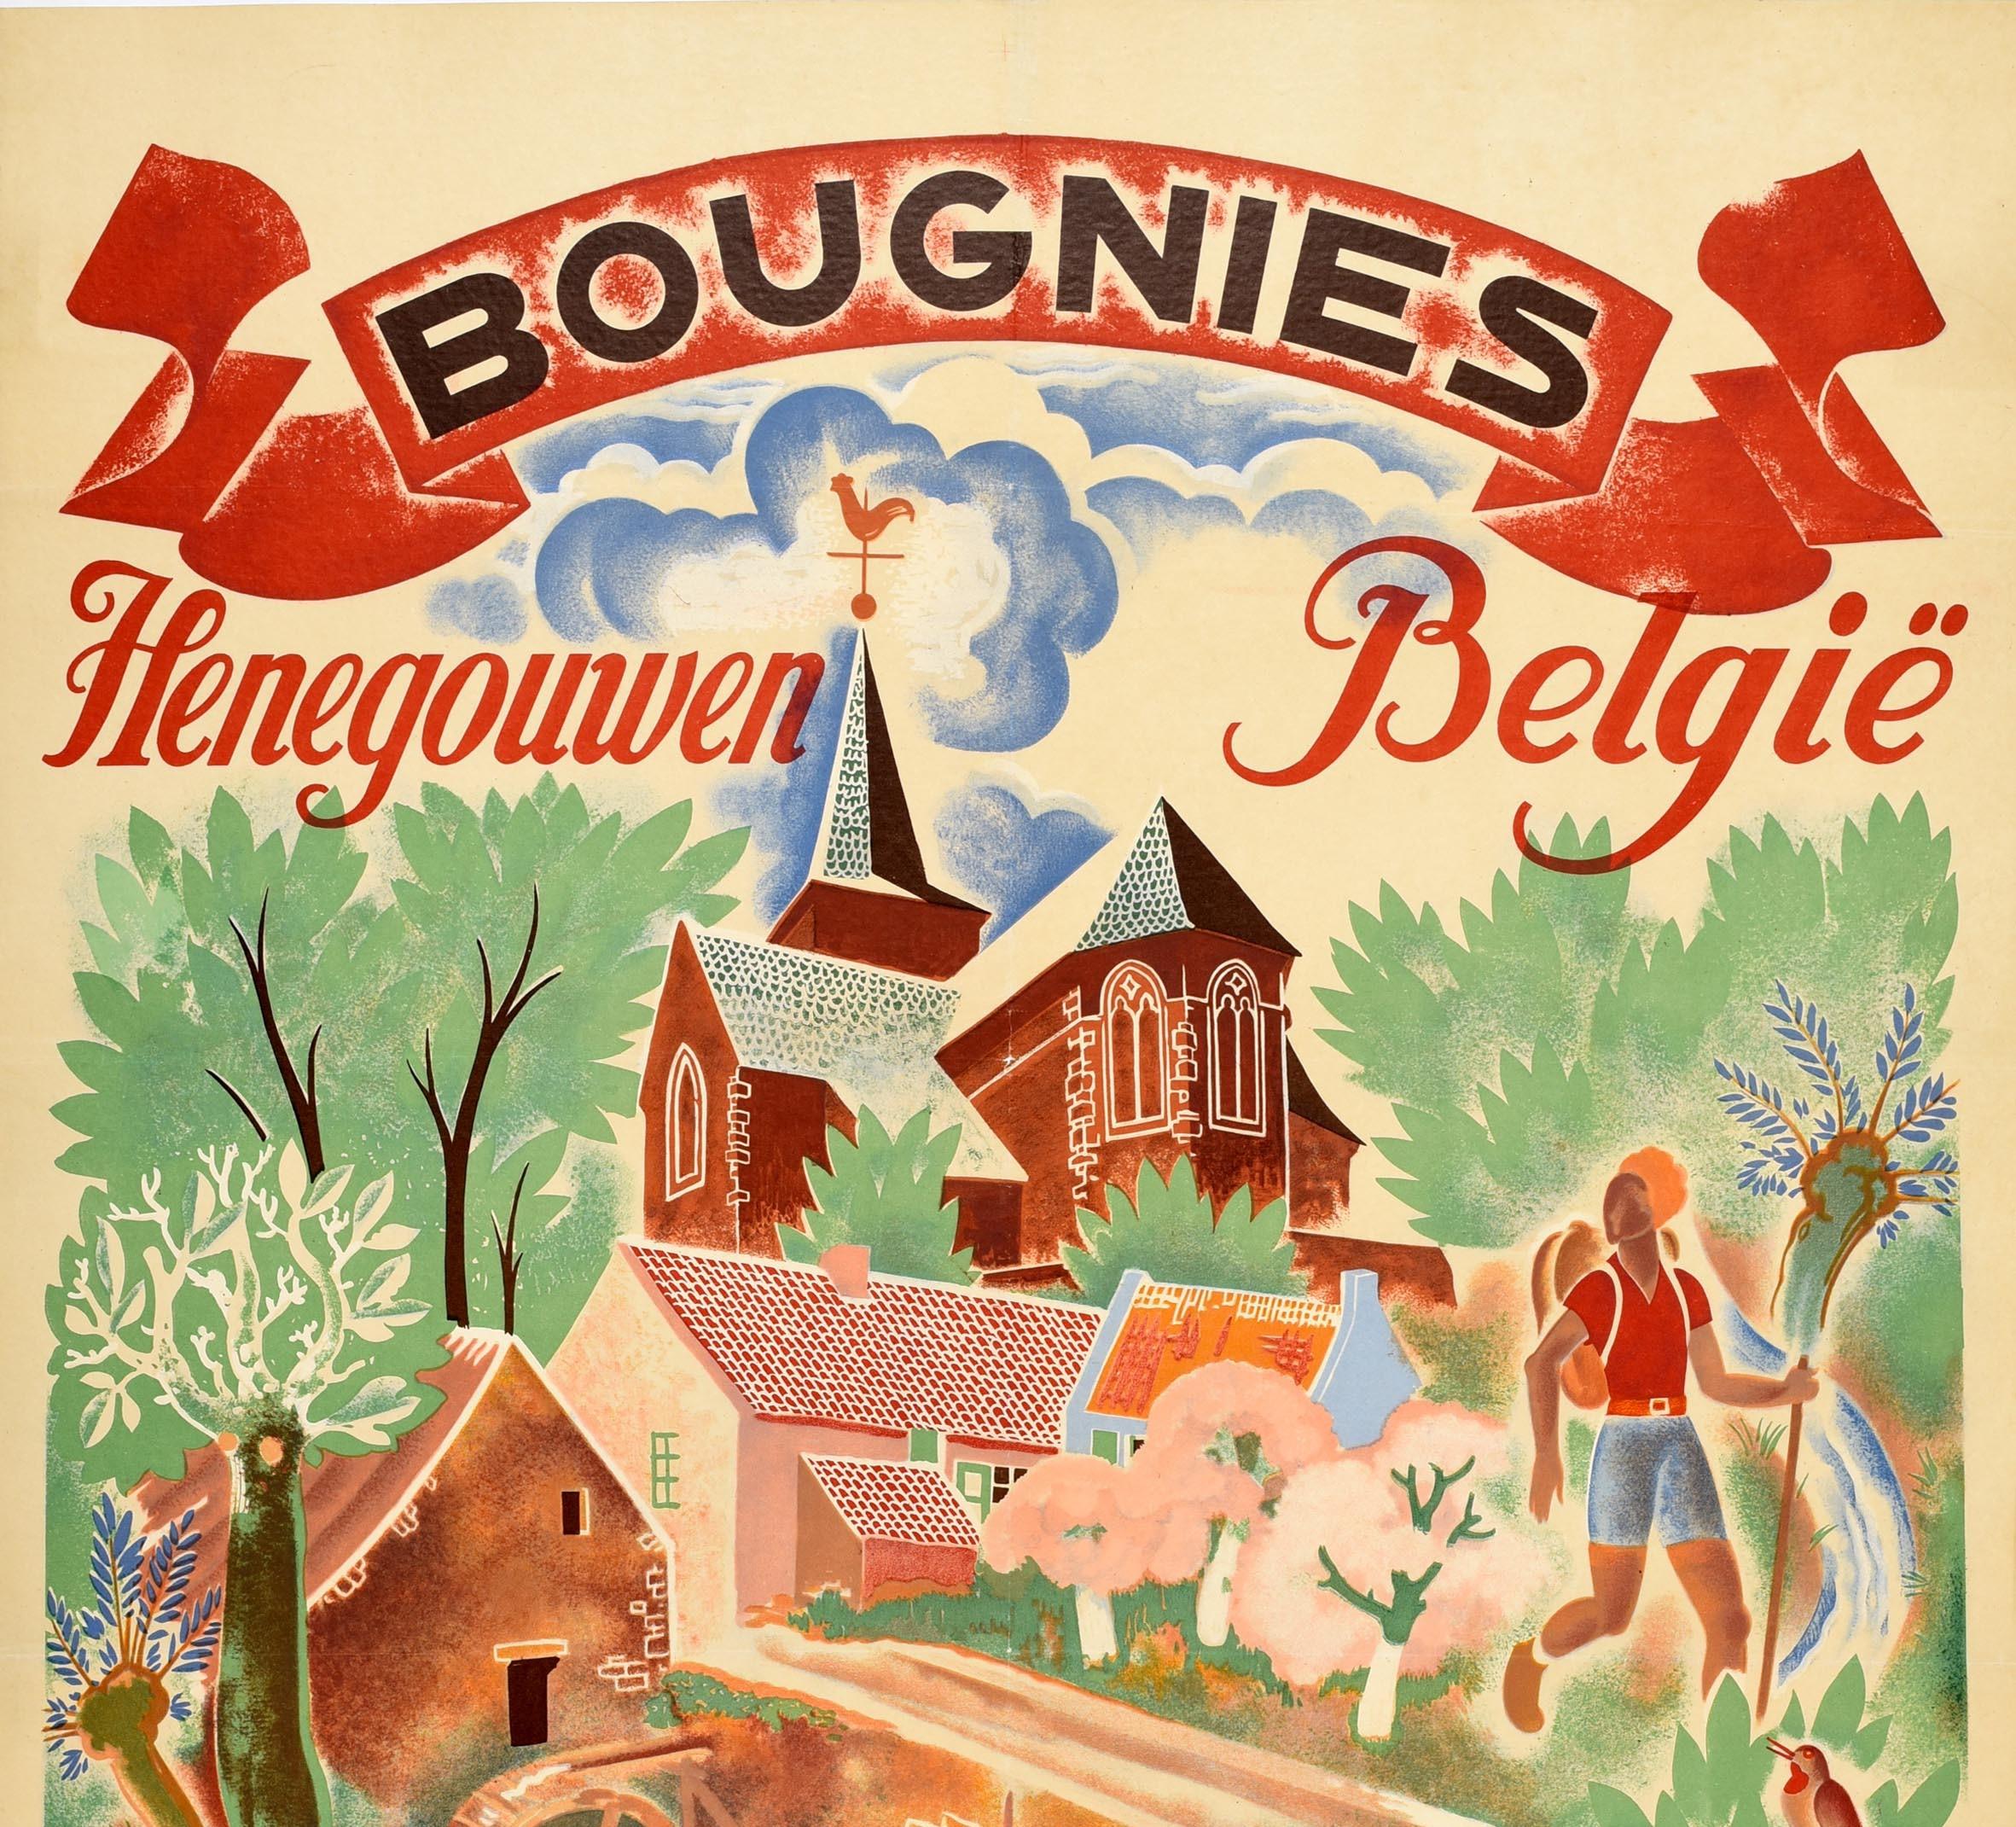 Original-Vintage-Reiseplakat Bougnies Henegouwen, Belgien, Sport, Reisen – Print von Unknown